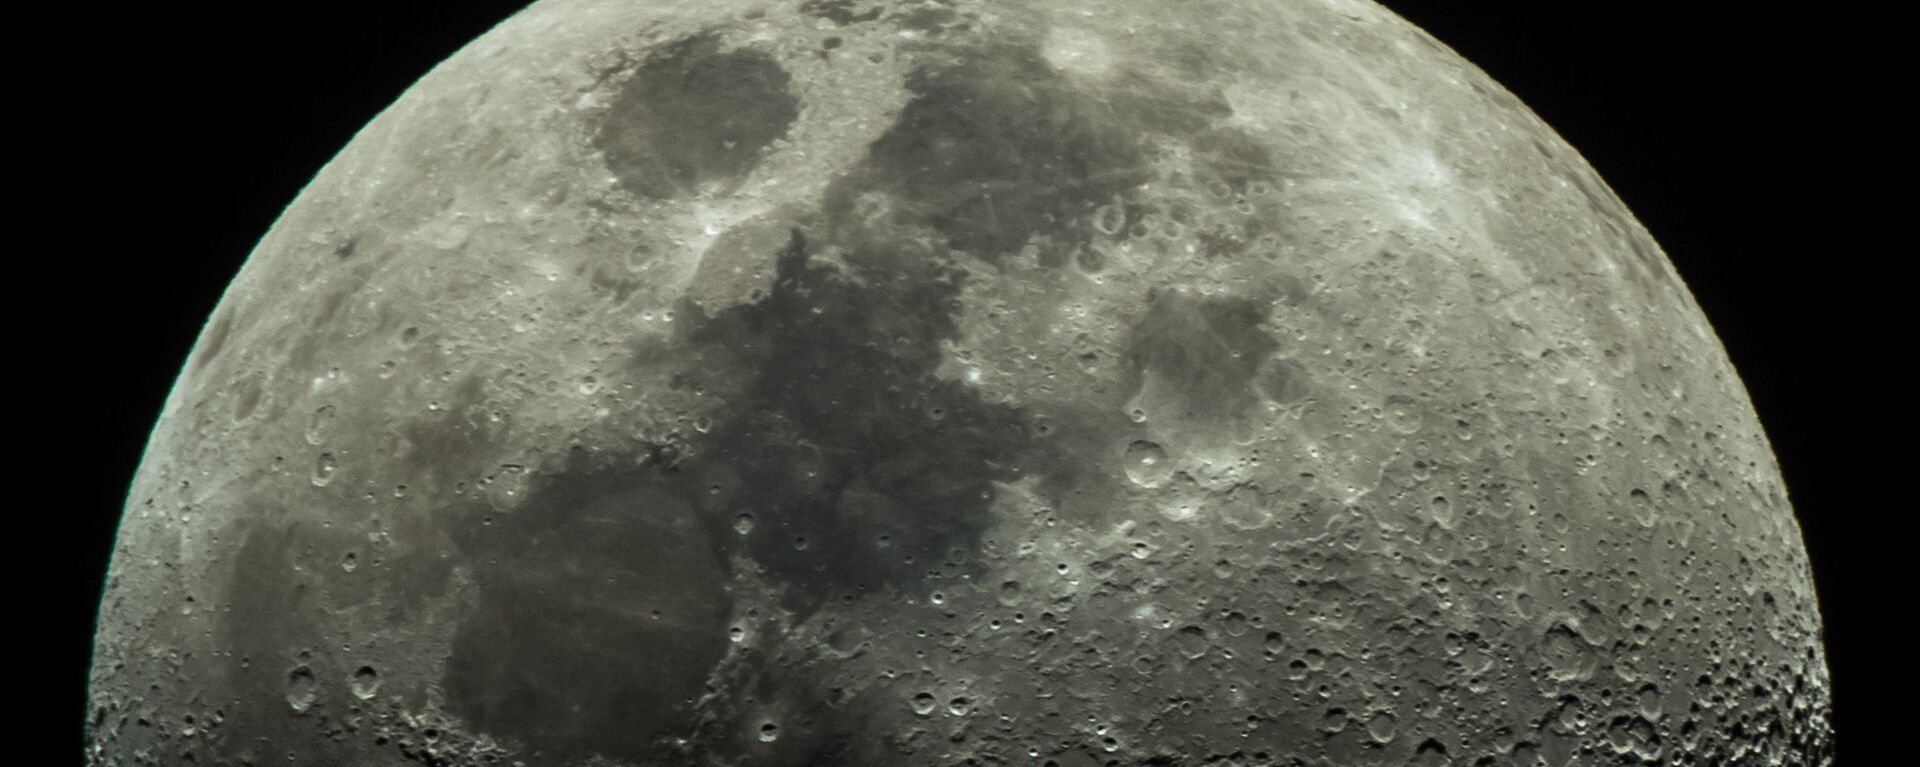 Луна - Sputnik Latvija, 1920, 27.08.2018